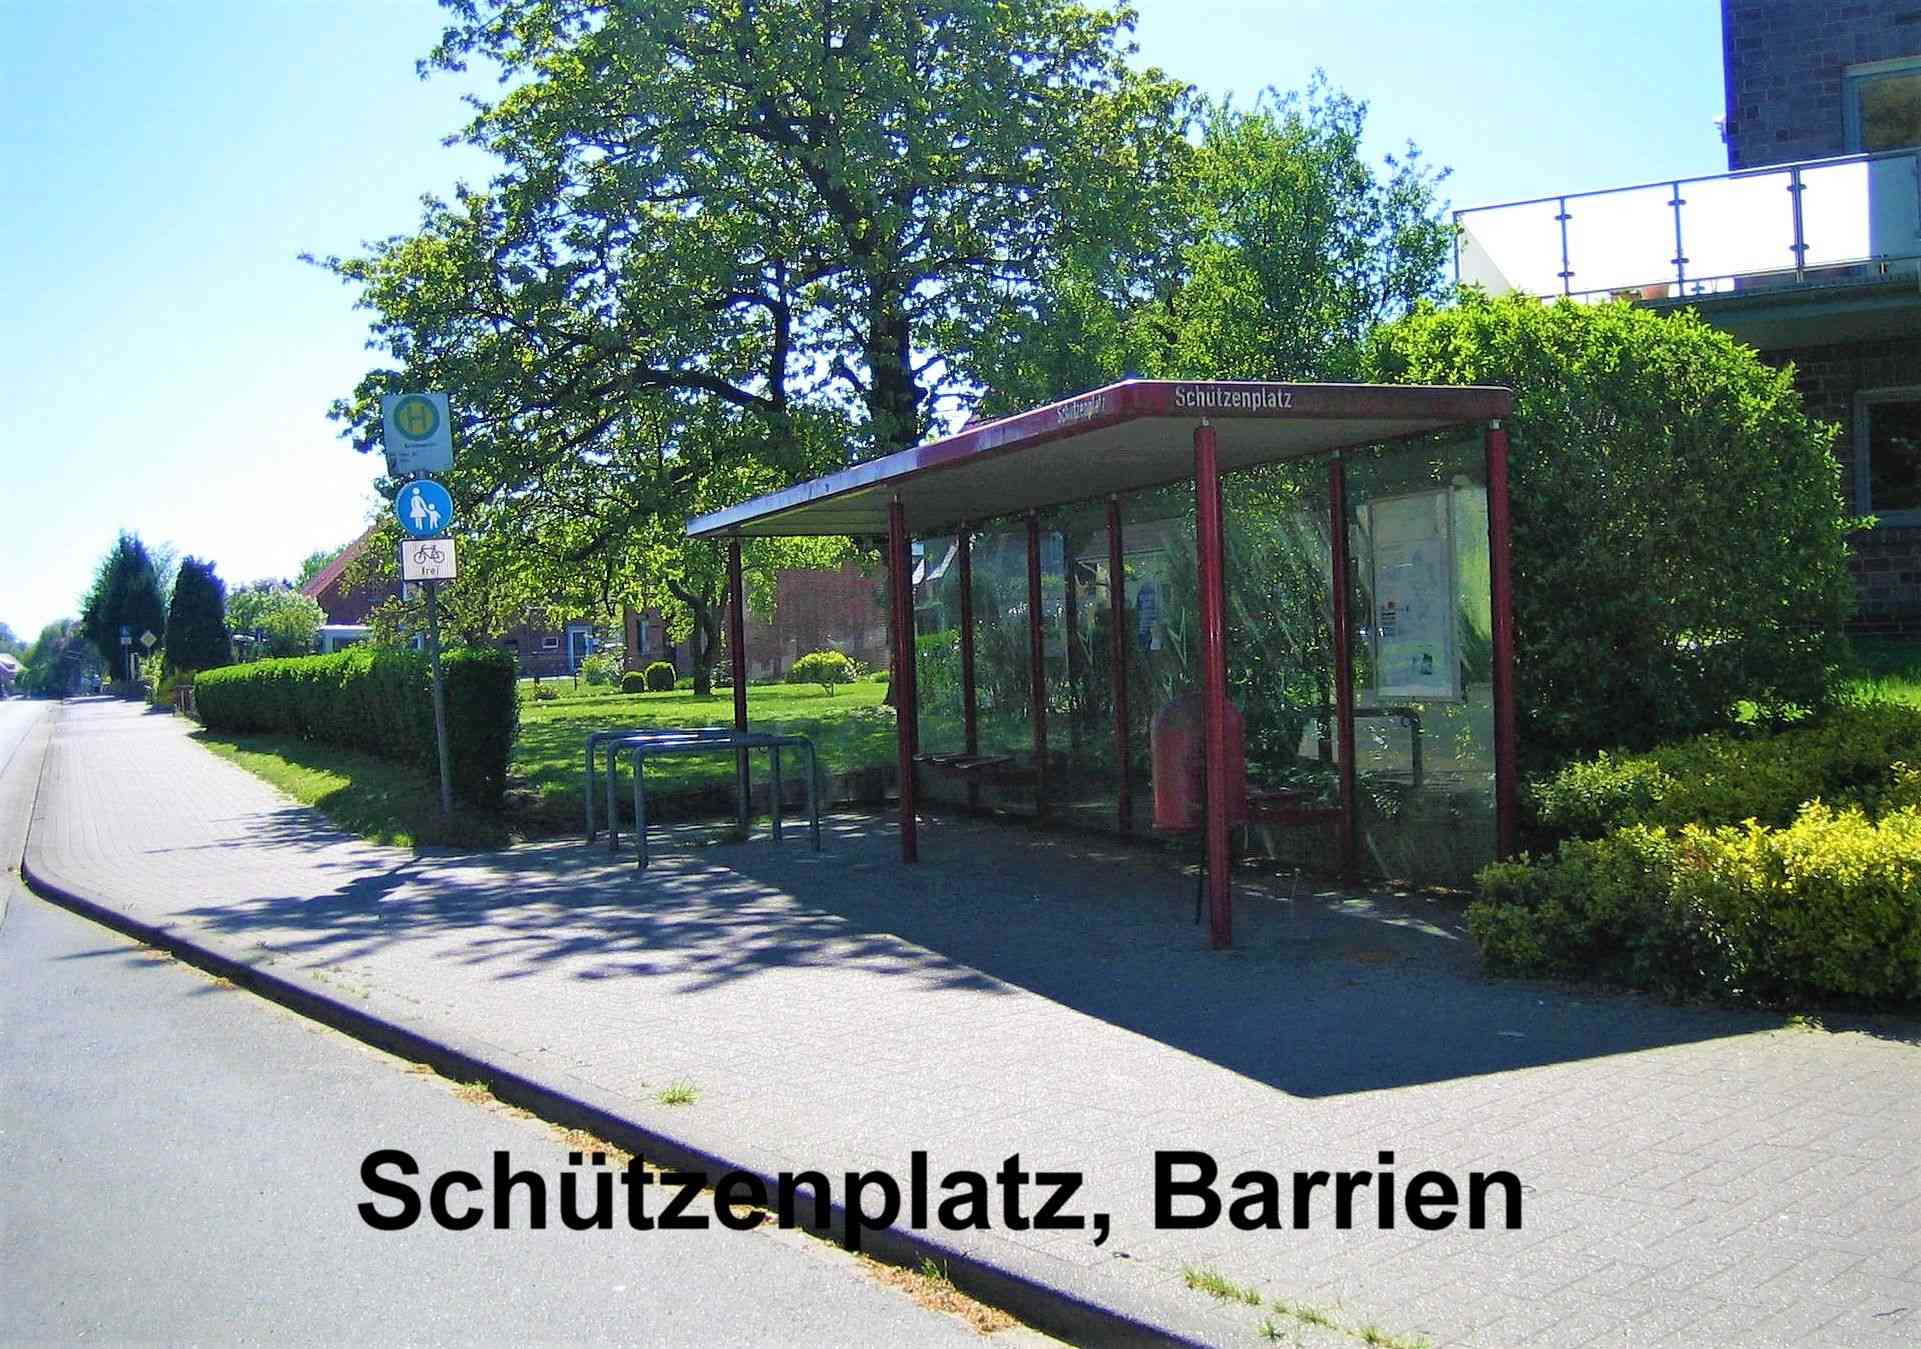 186-25_Schtzenplatz_Barrien.jpg